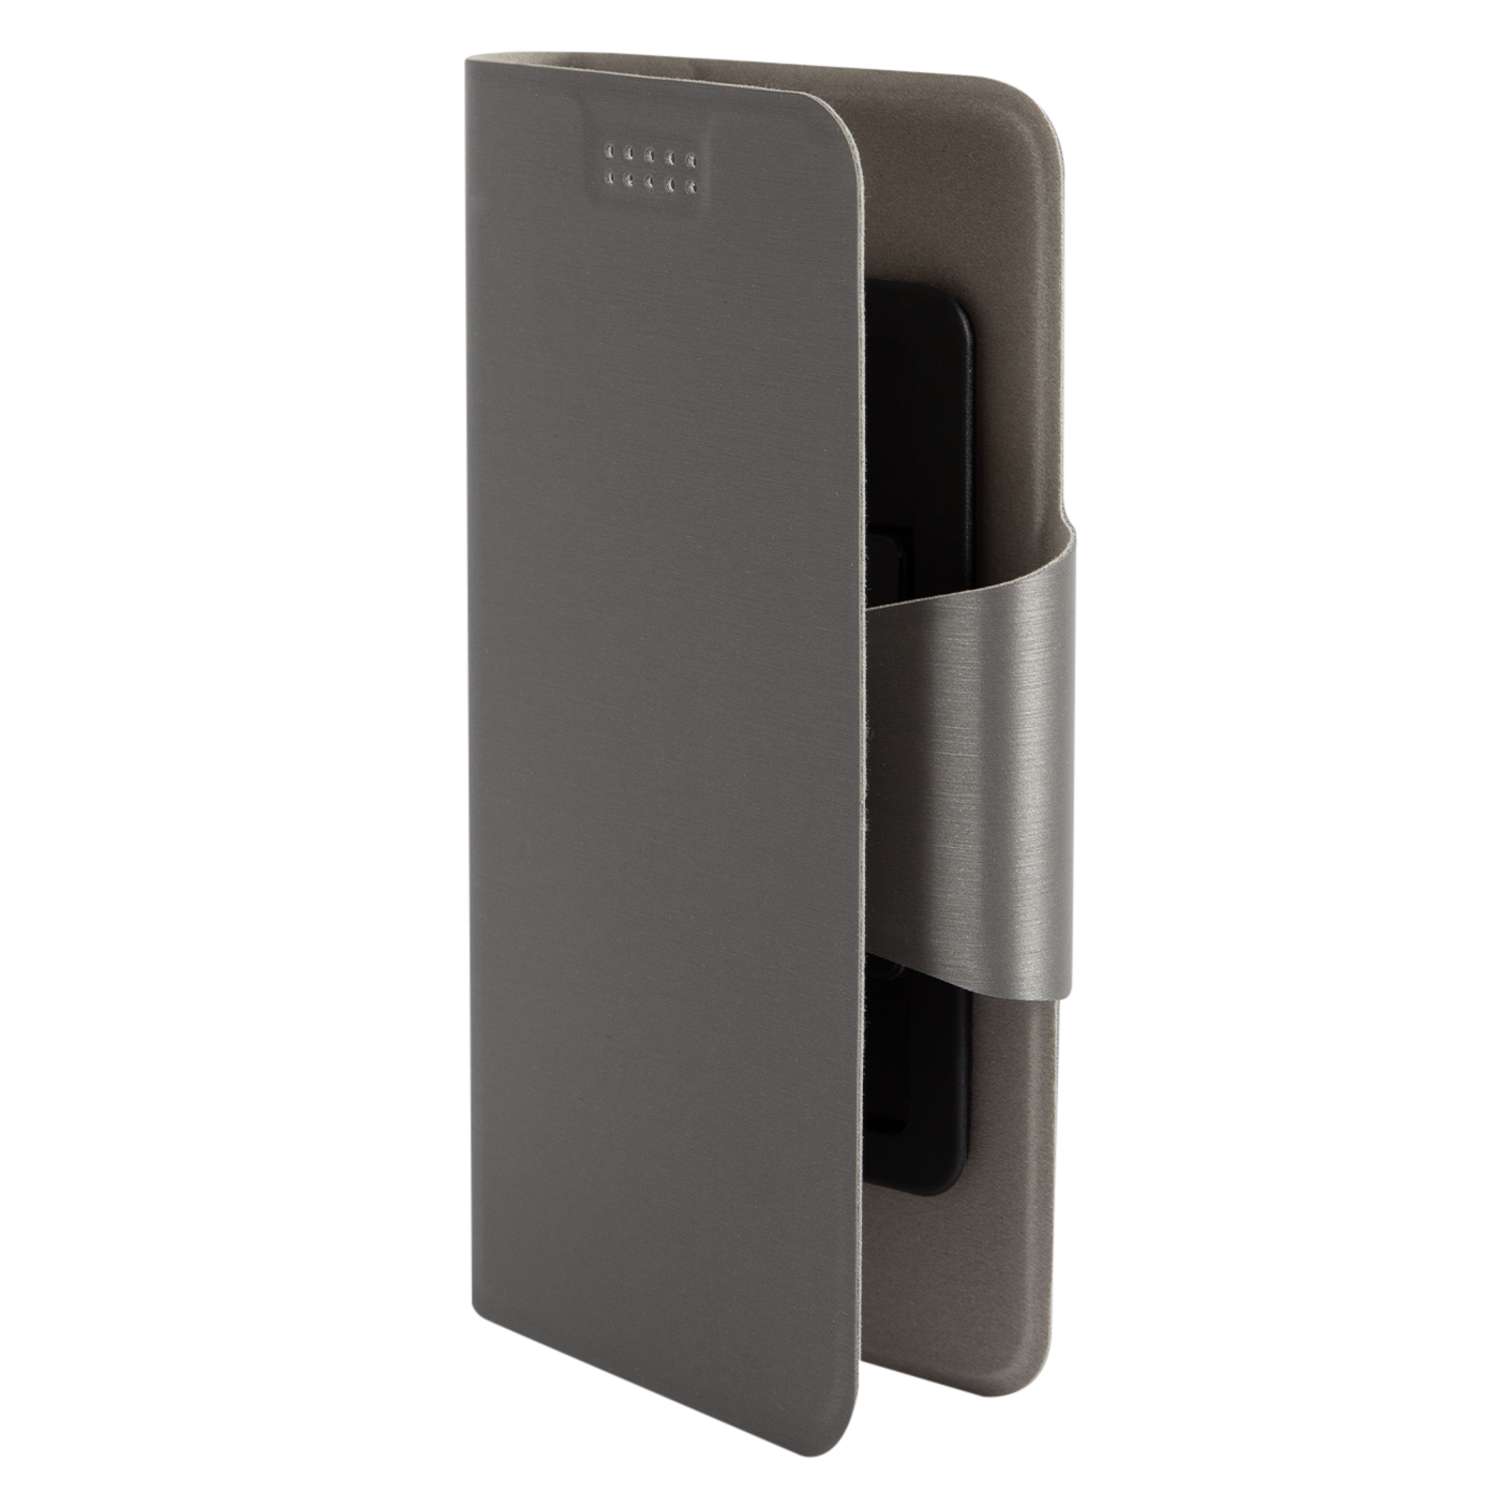 Чехол универсальный iBox UniMotion для телефонов 3.5-4.5 дюйма серый - фото 1